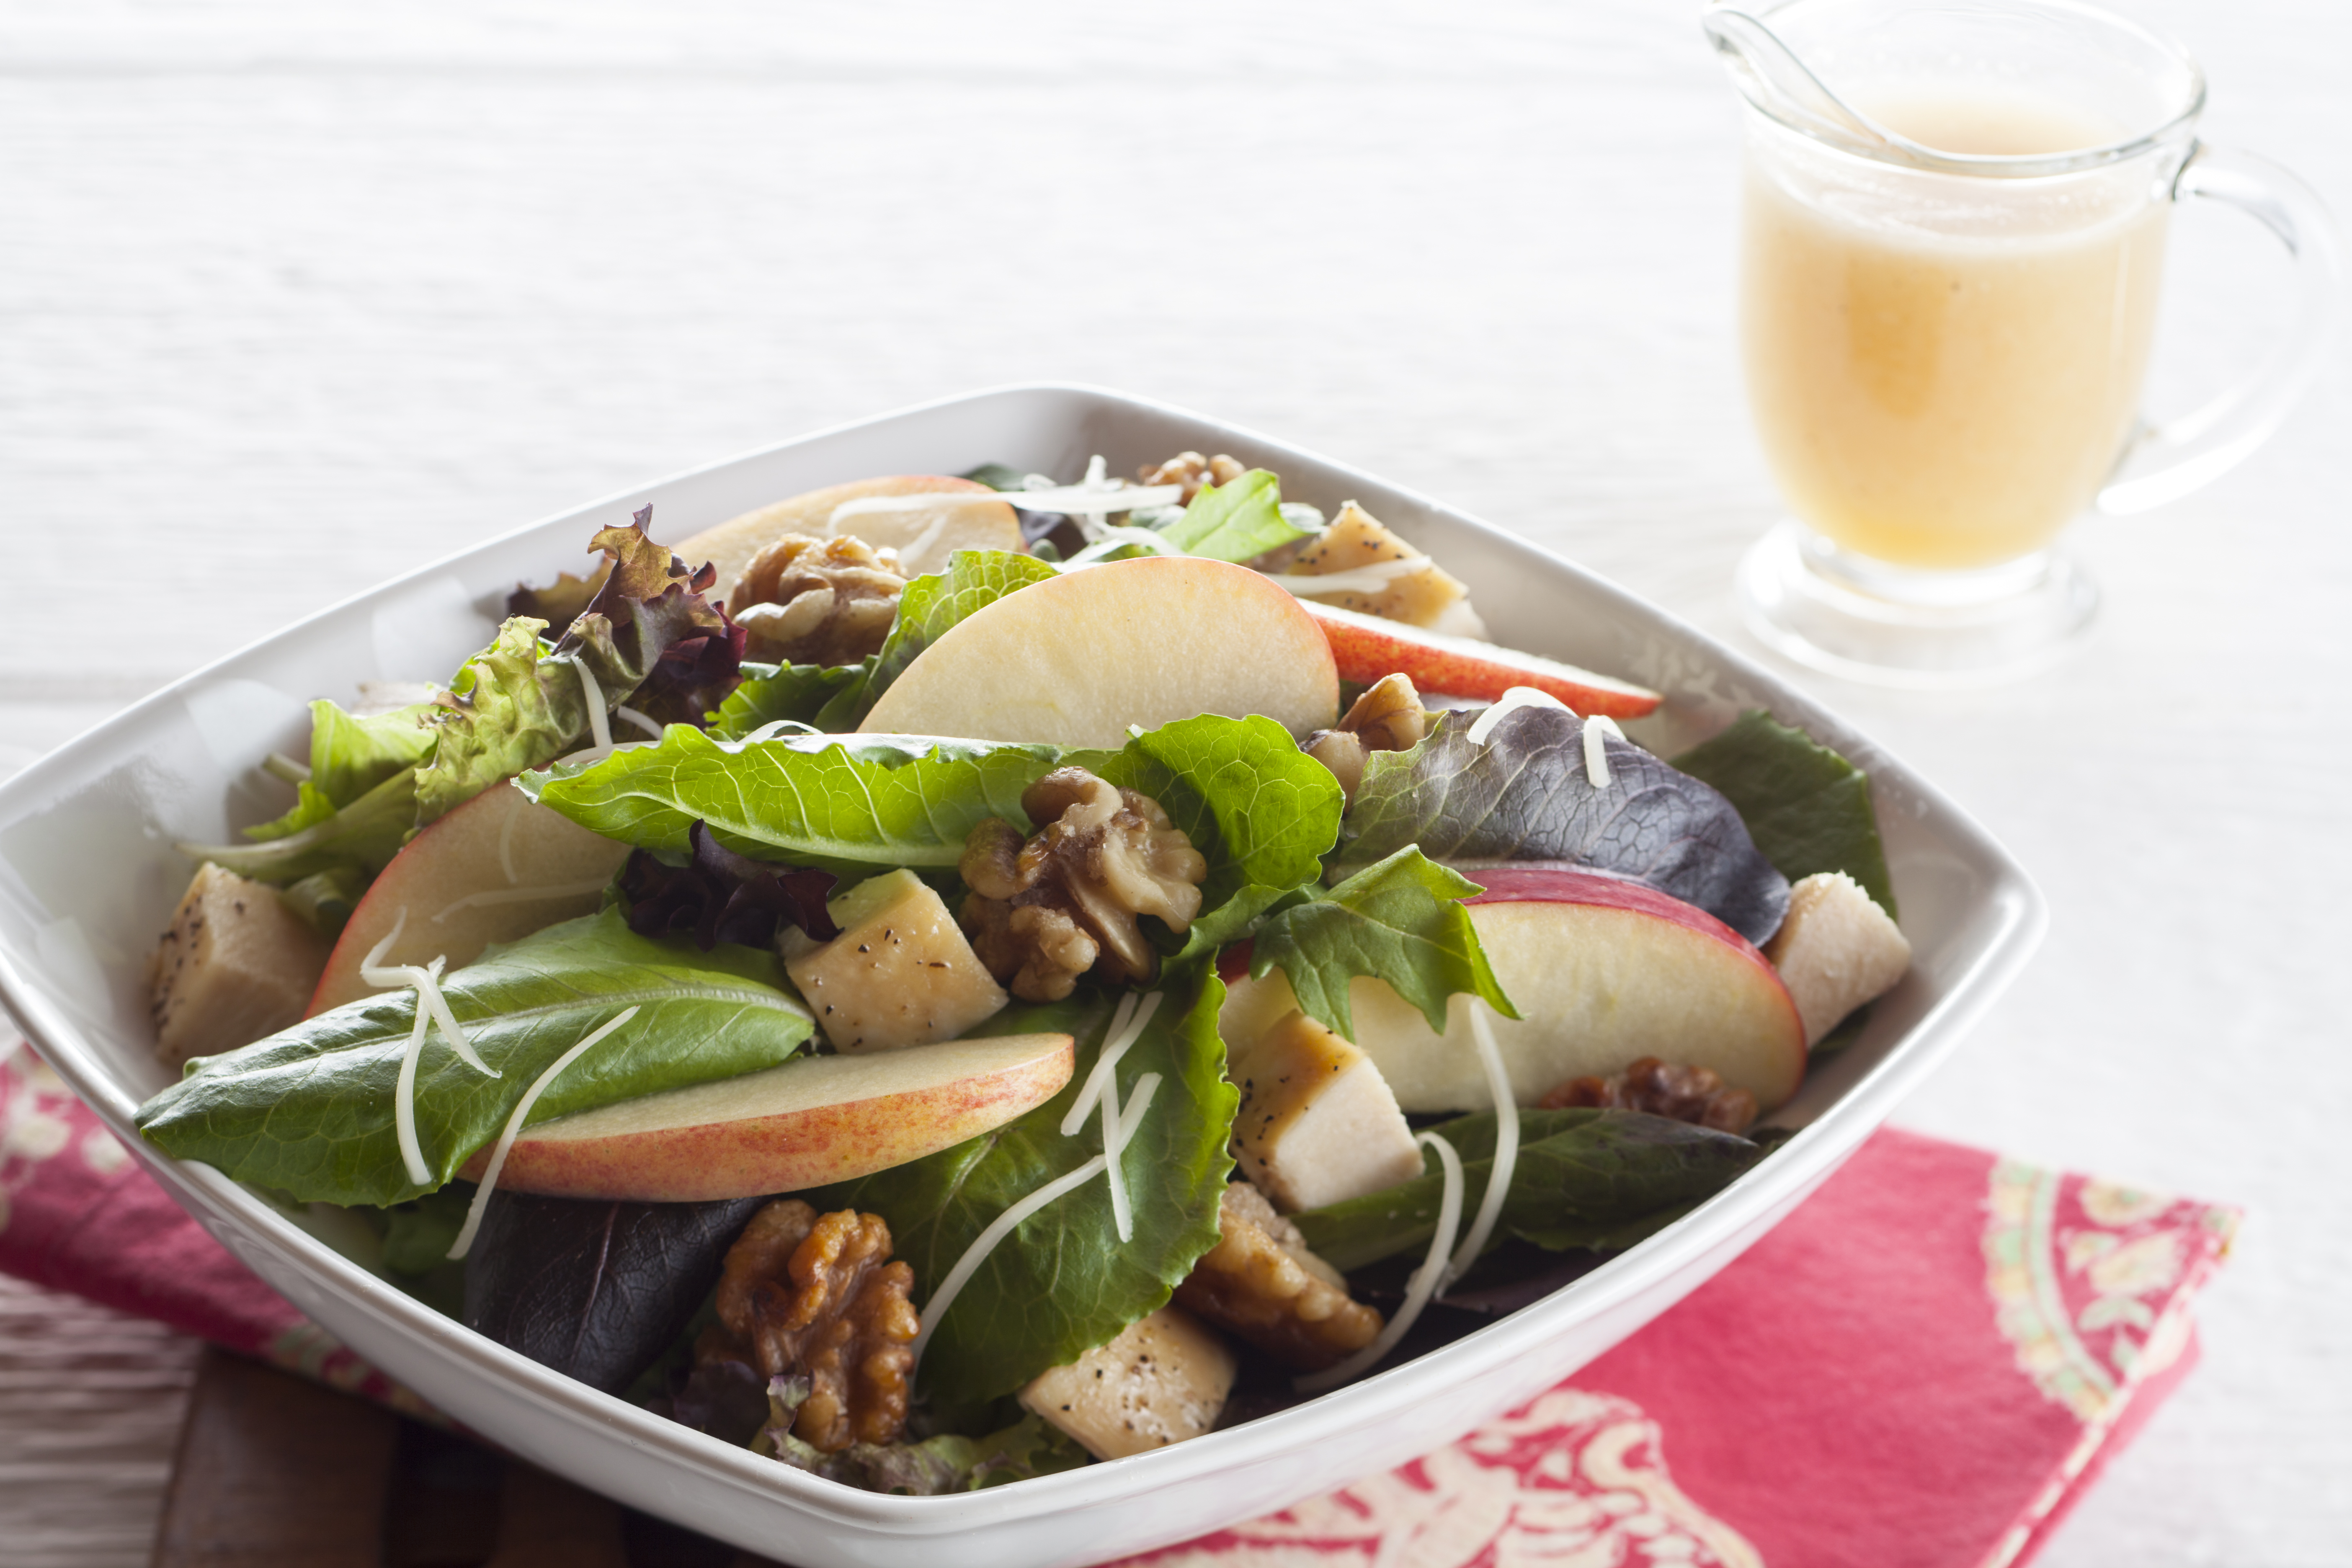 Apple Orchard Salad with Apple Cider Vinaigrette Dressing